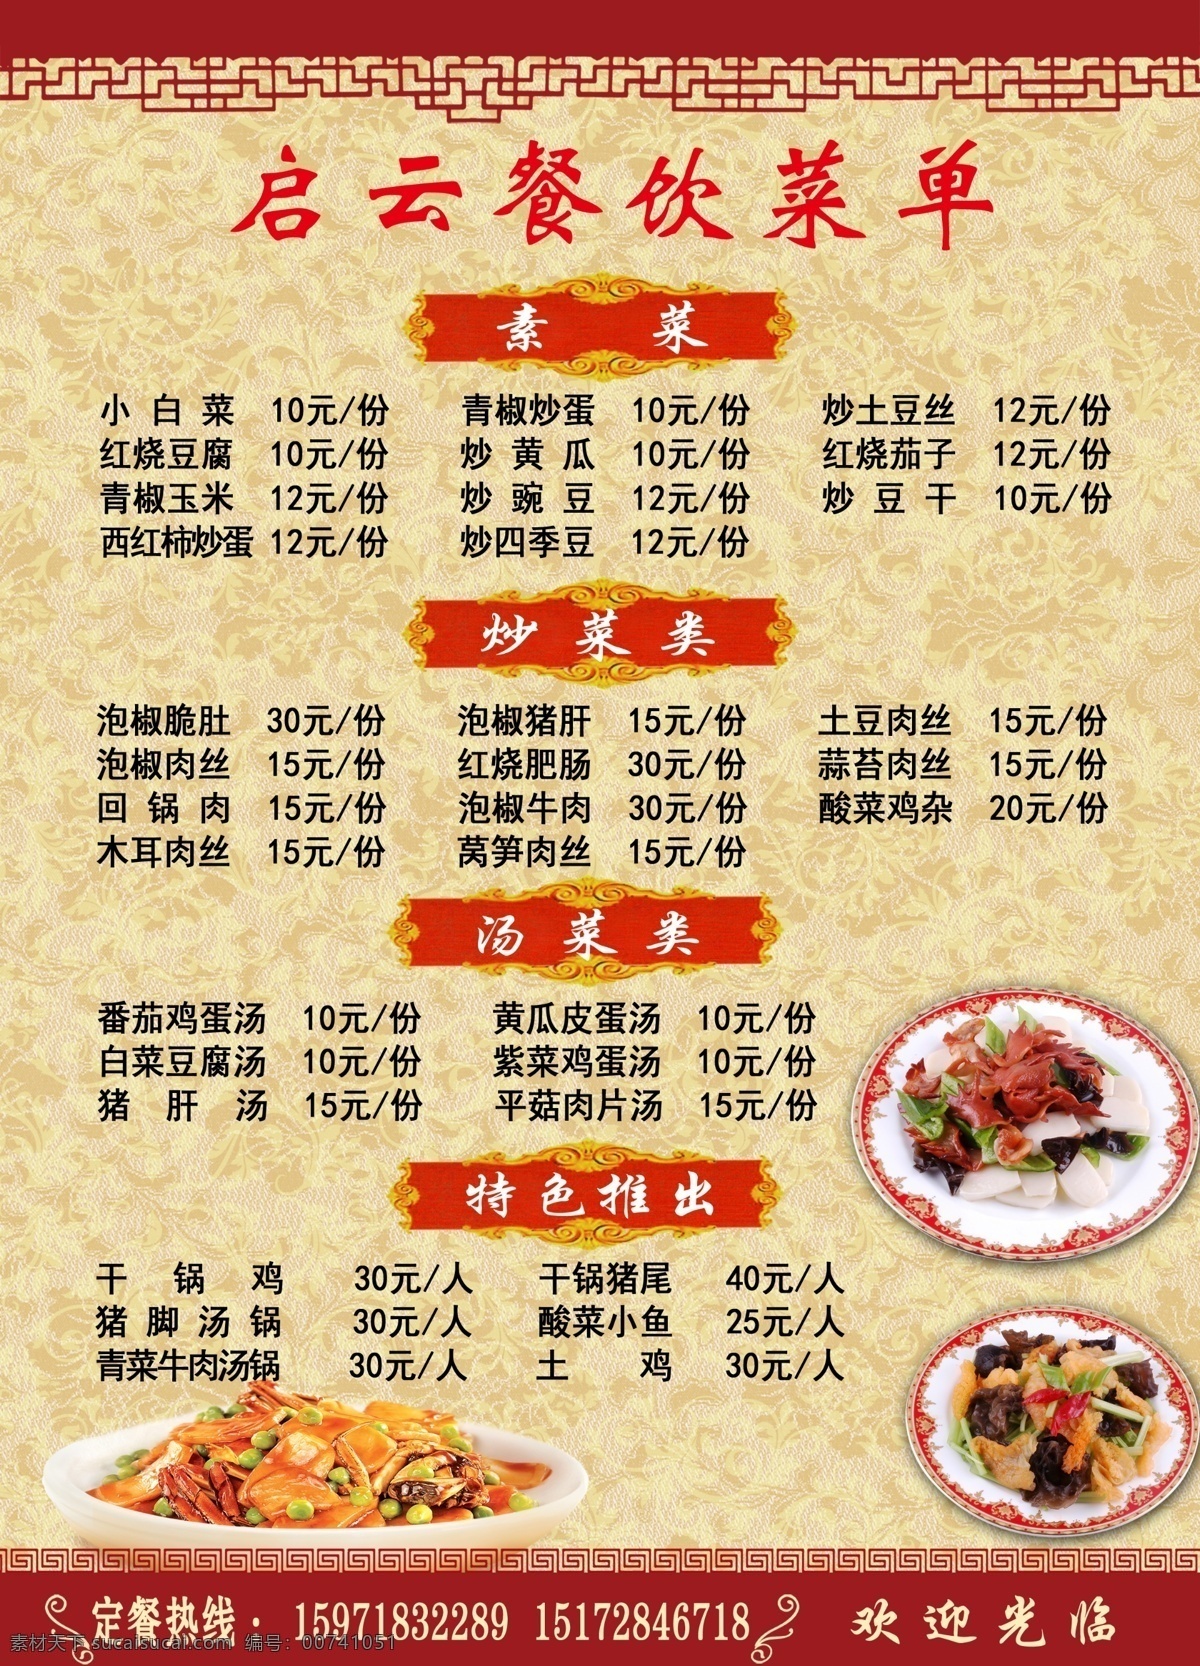 启云餐饮菜单 菜谱 菜单 价格表 小吃菜单 价目表 小吃 招贴海报 室外广告设计